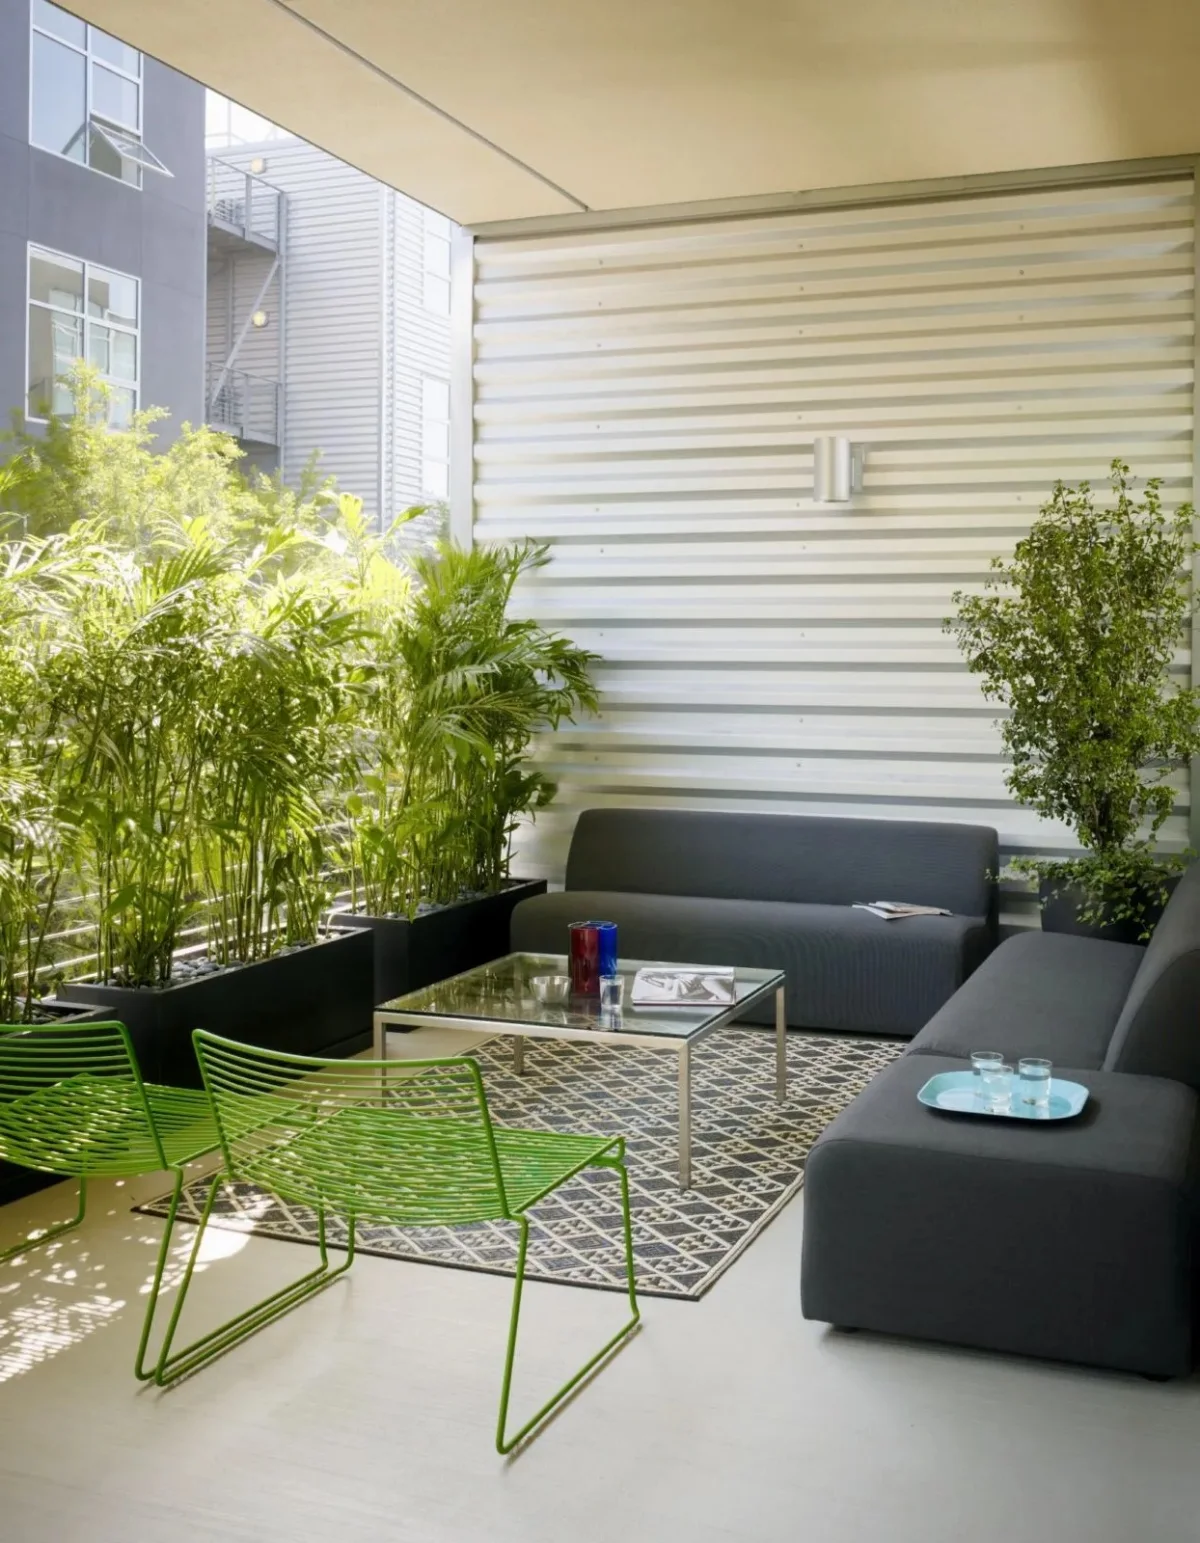 deco terrasse avec plantes brise vue balcon bambou en pot